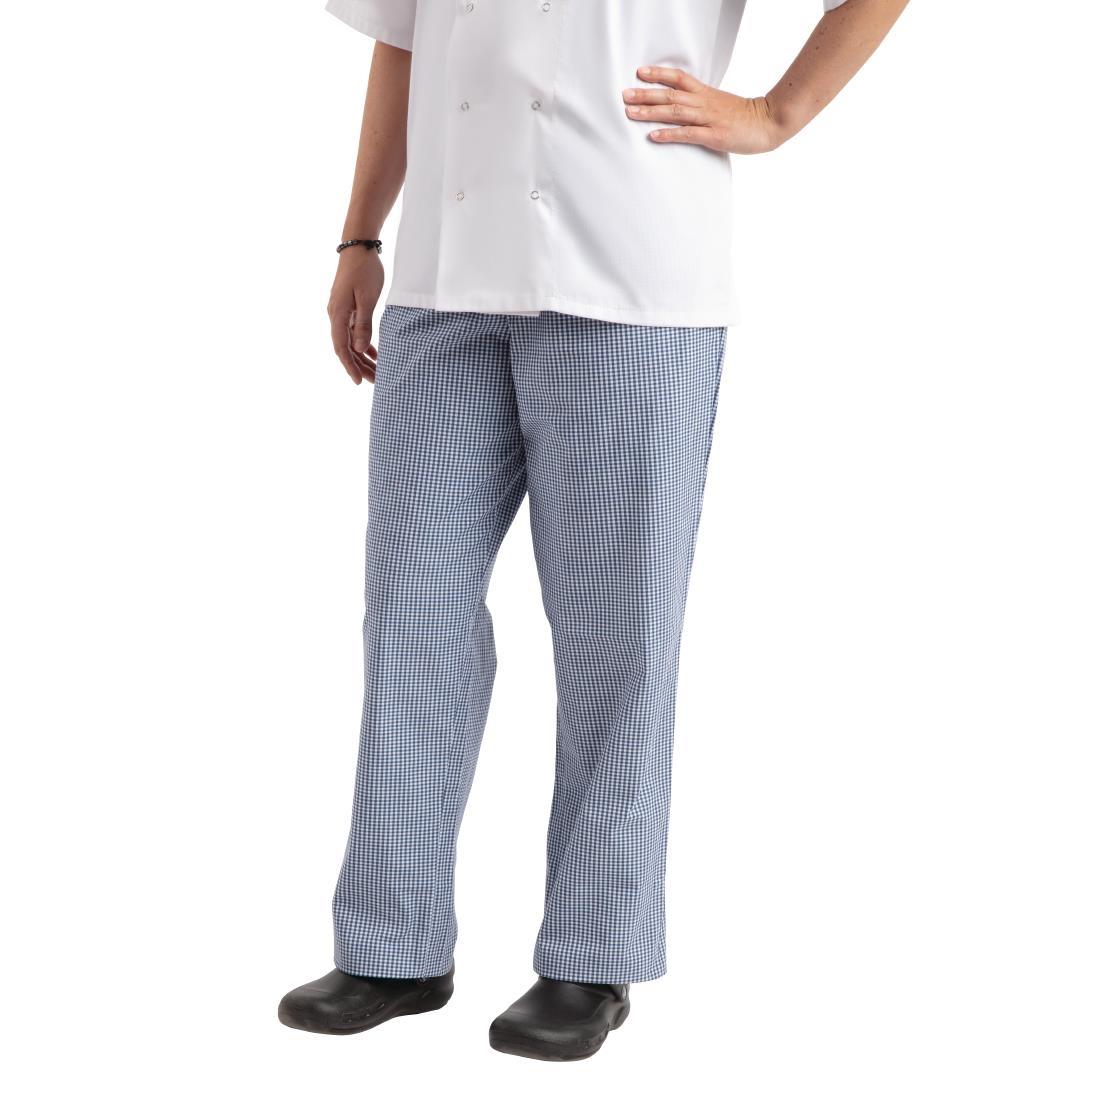 Whites Easyfit Trousers Teflon Blue Check S - A025T-S  - 1